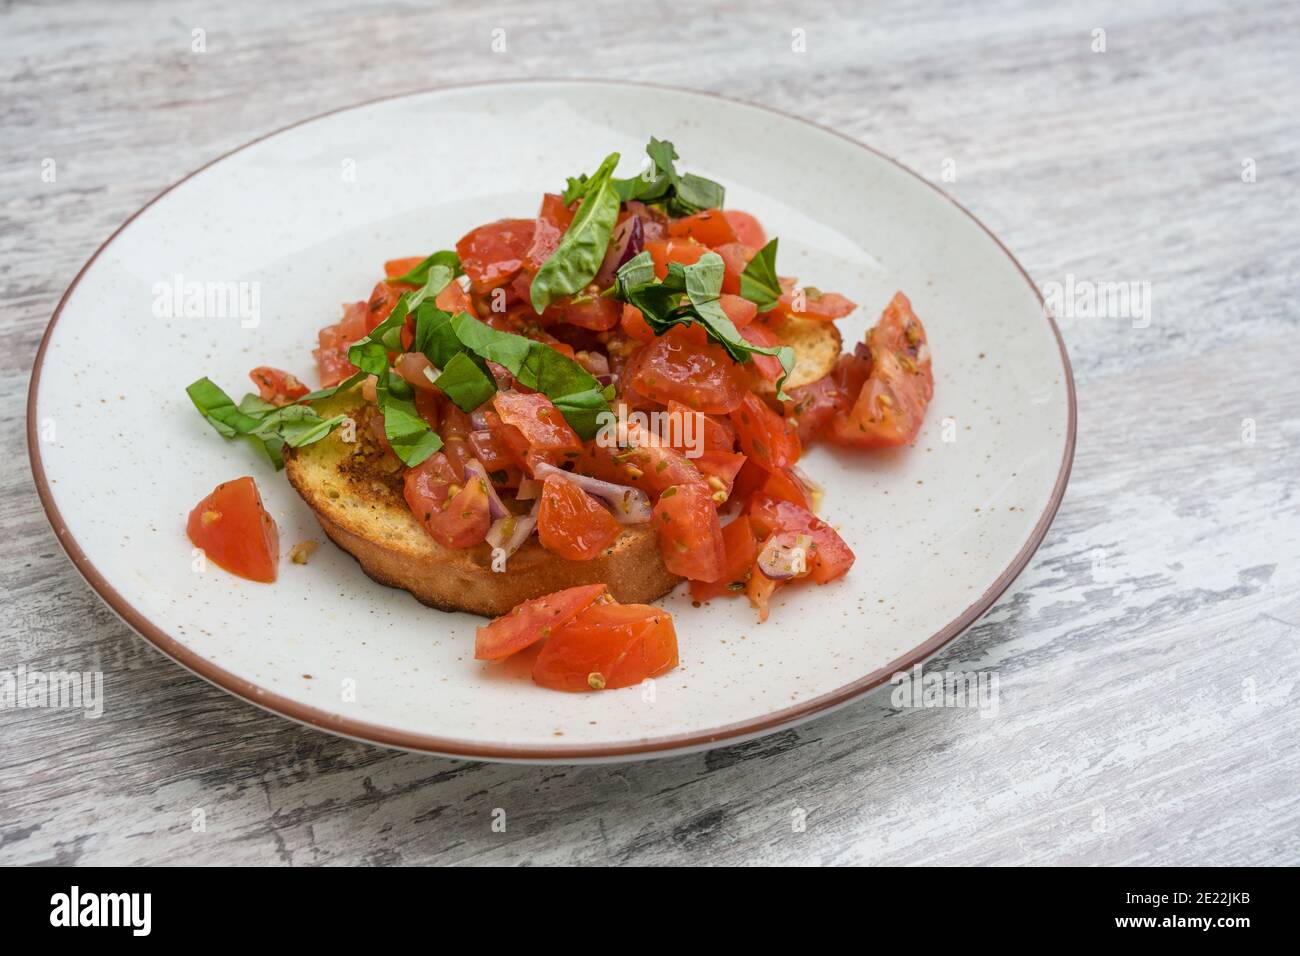 Bruschetta, pain grillé à l'ail et à l'huile d'olive, servi avec des tomates en dés, oignon et basilic, apéritif italien populaire sur une assiette et un tabl gris Banque D'Images